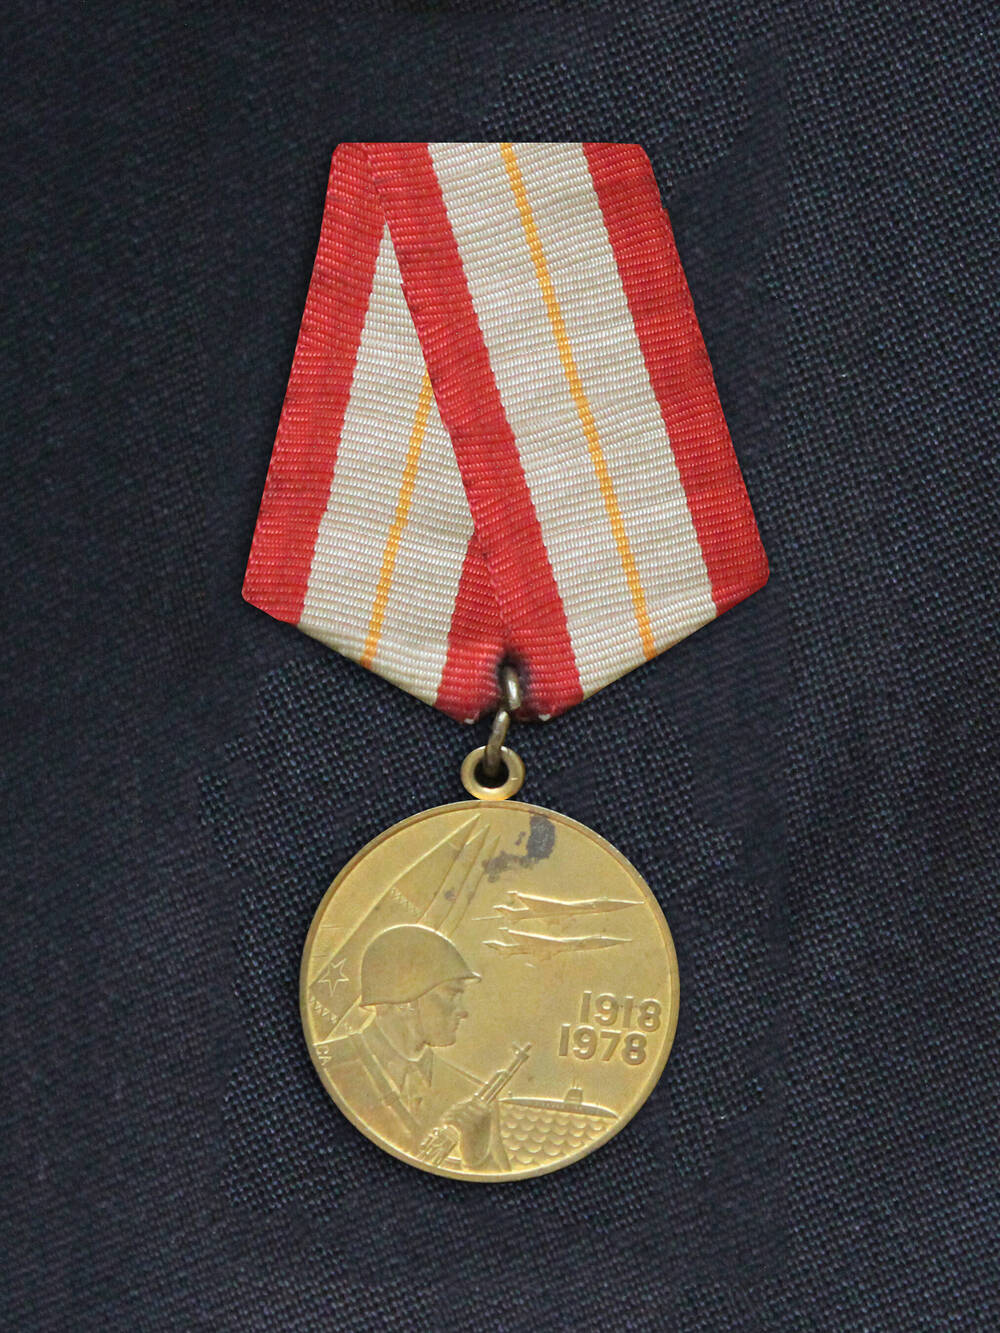 Медаль «60 лет Вооруженных сил СССР» Музыкаева Х. А.